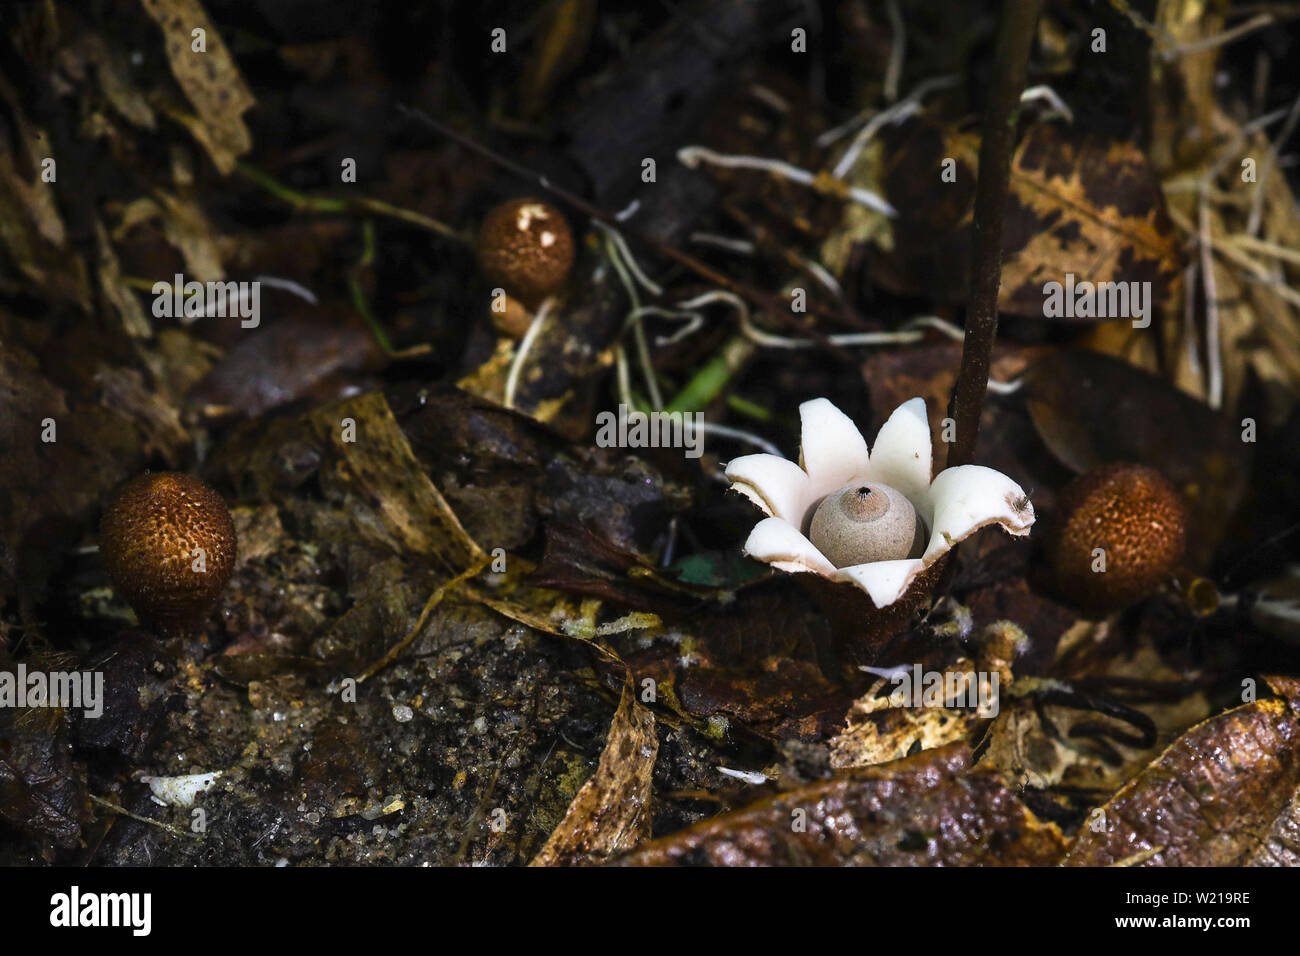 Rari funghi di stelle di terra della famiglia Geastraceae trovato su un pavimento forestale in una foresta tropicale Foto Stock